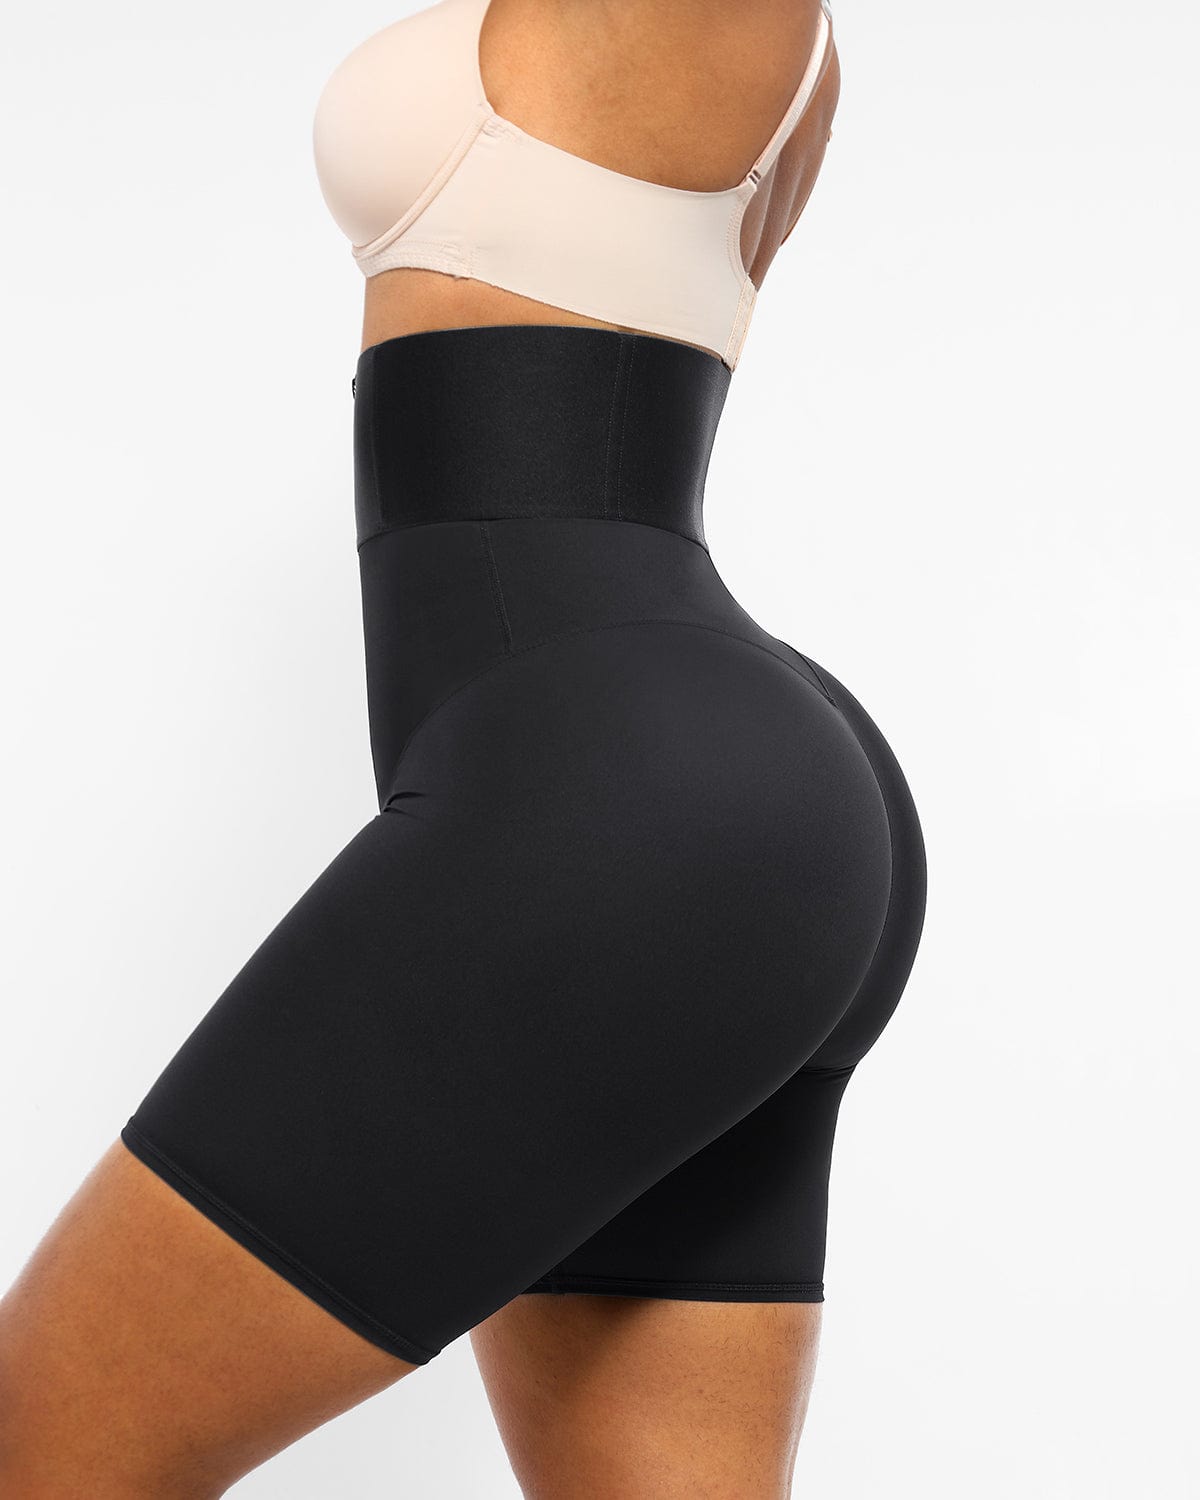 AirSlim® ElasticFuse Waistband Shaping Shorts